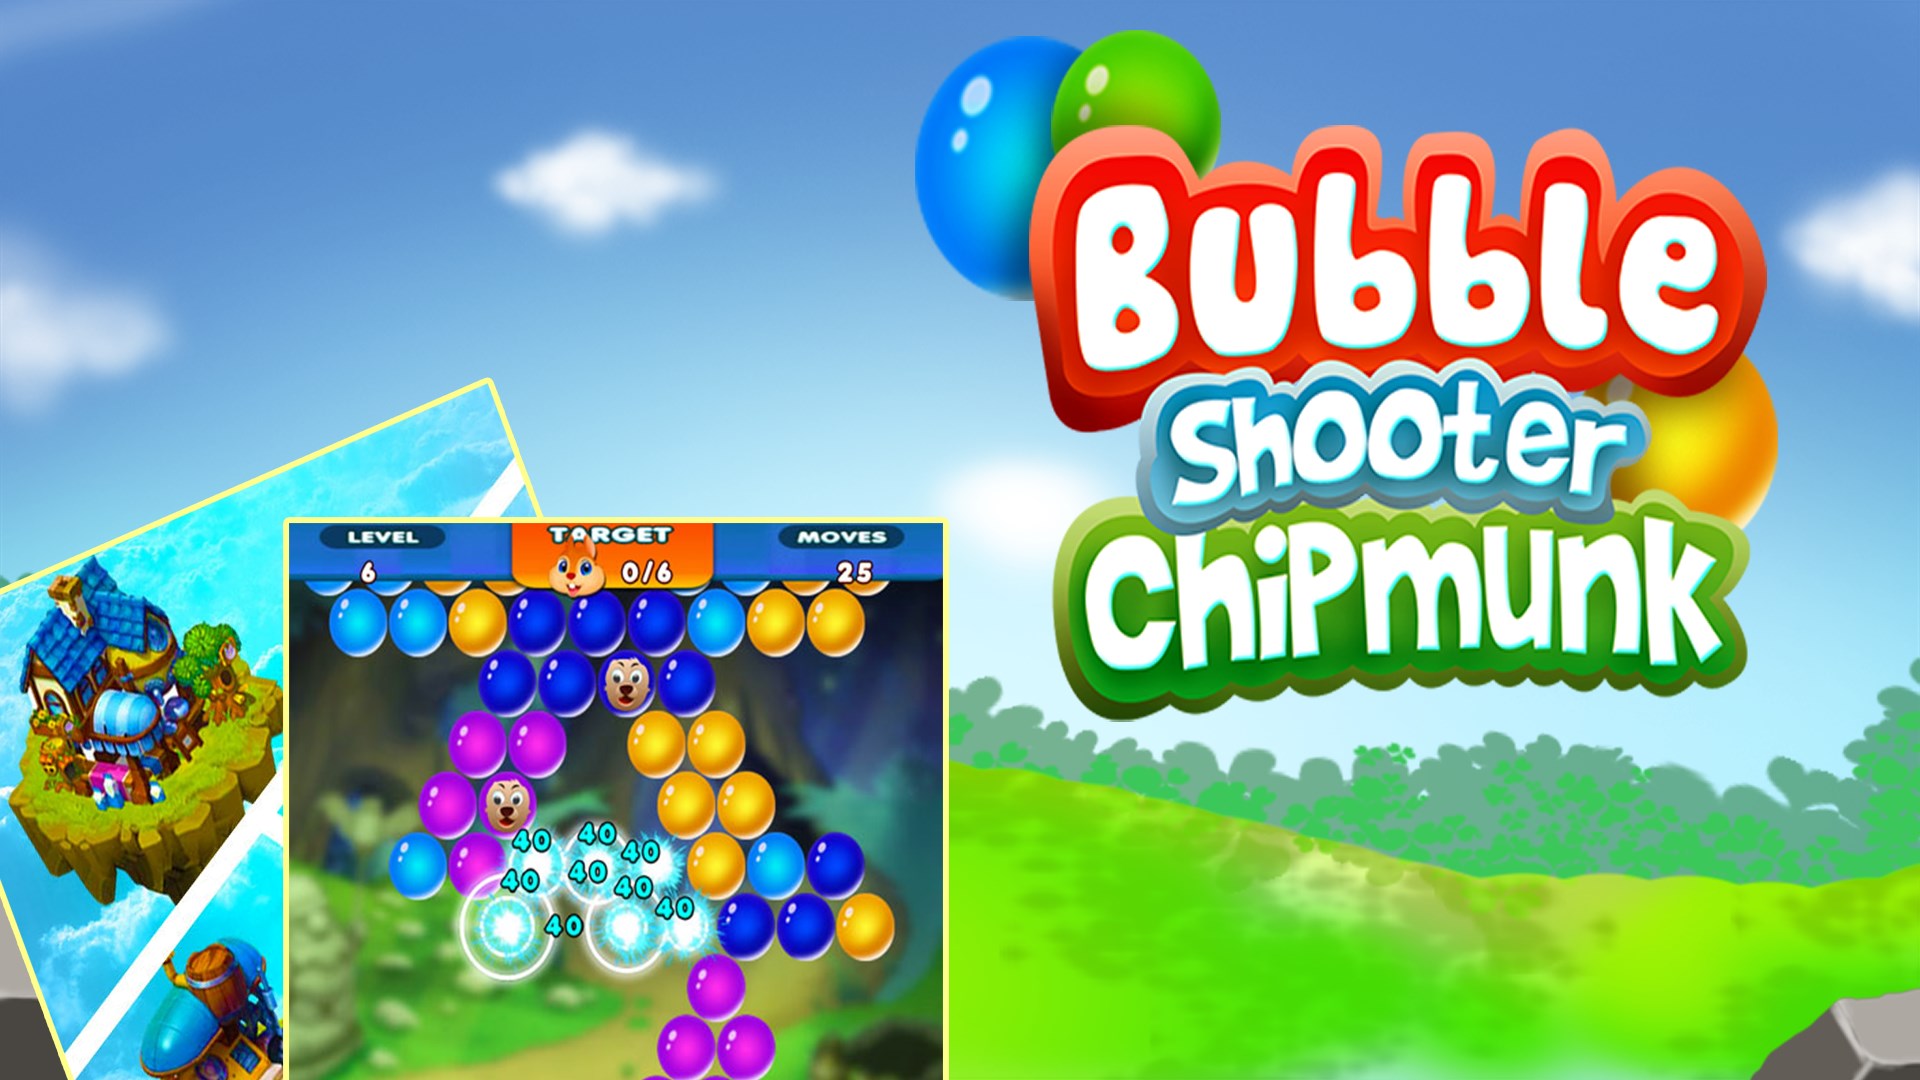 Get Bubble Pop: Bubble Shooter - Microsoft Store